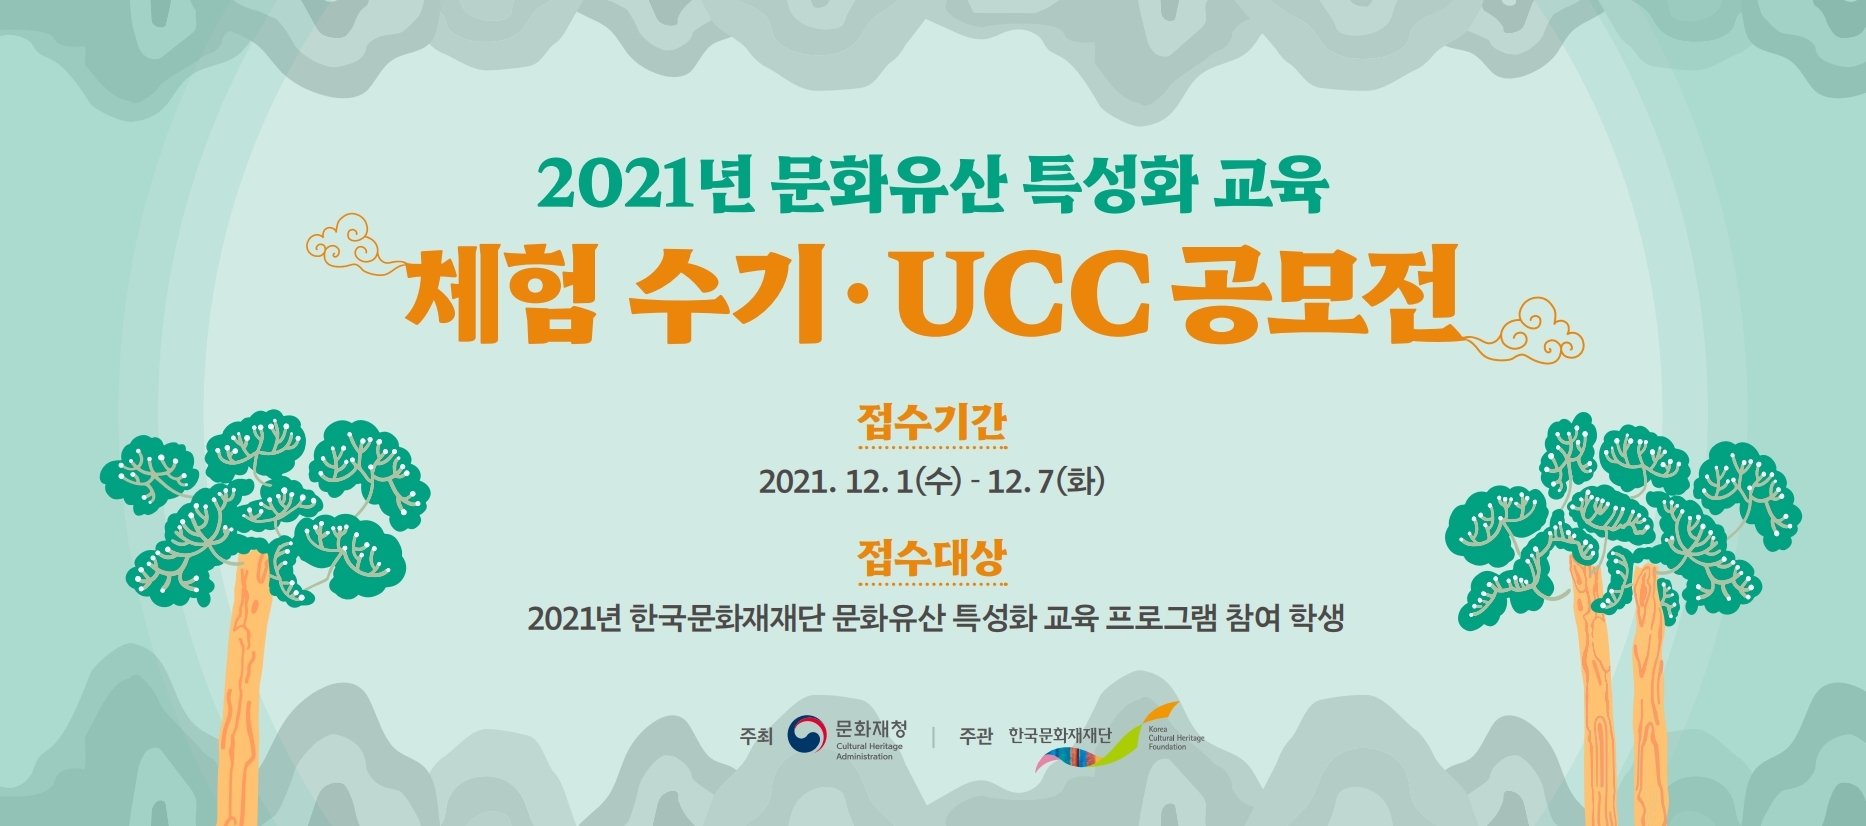 2021년 문화유산 특성화 교육 프로그램 수기·UCC 공모전 포스터 (자세한 내용 하단 참조)